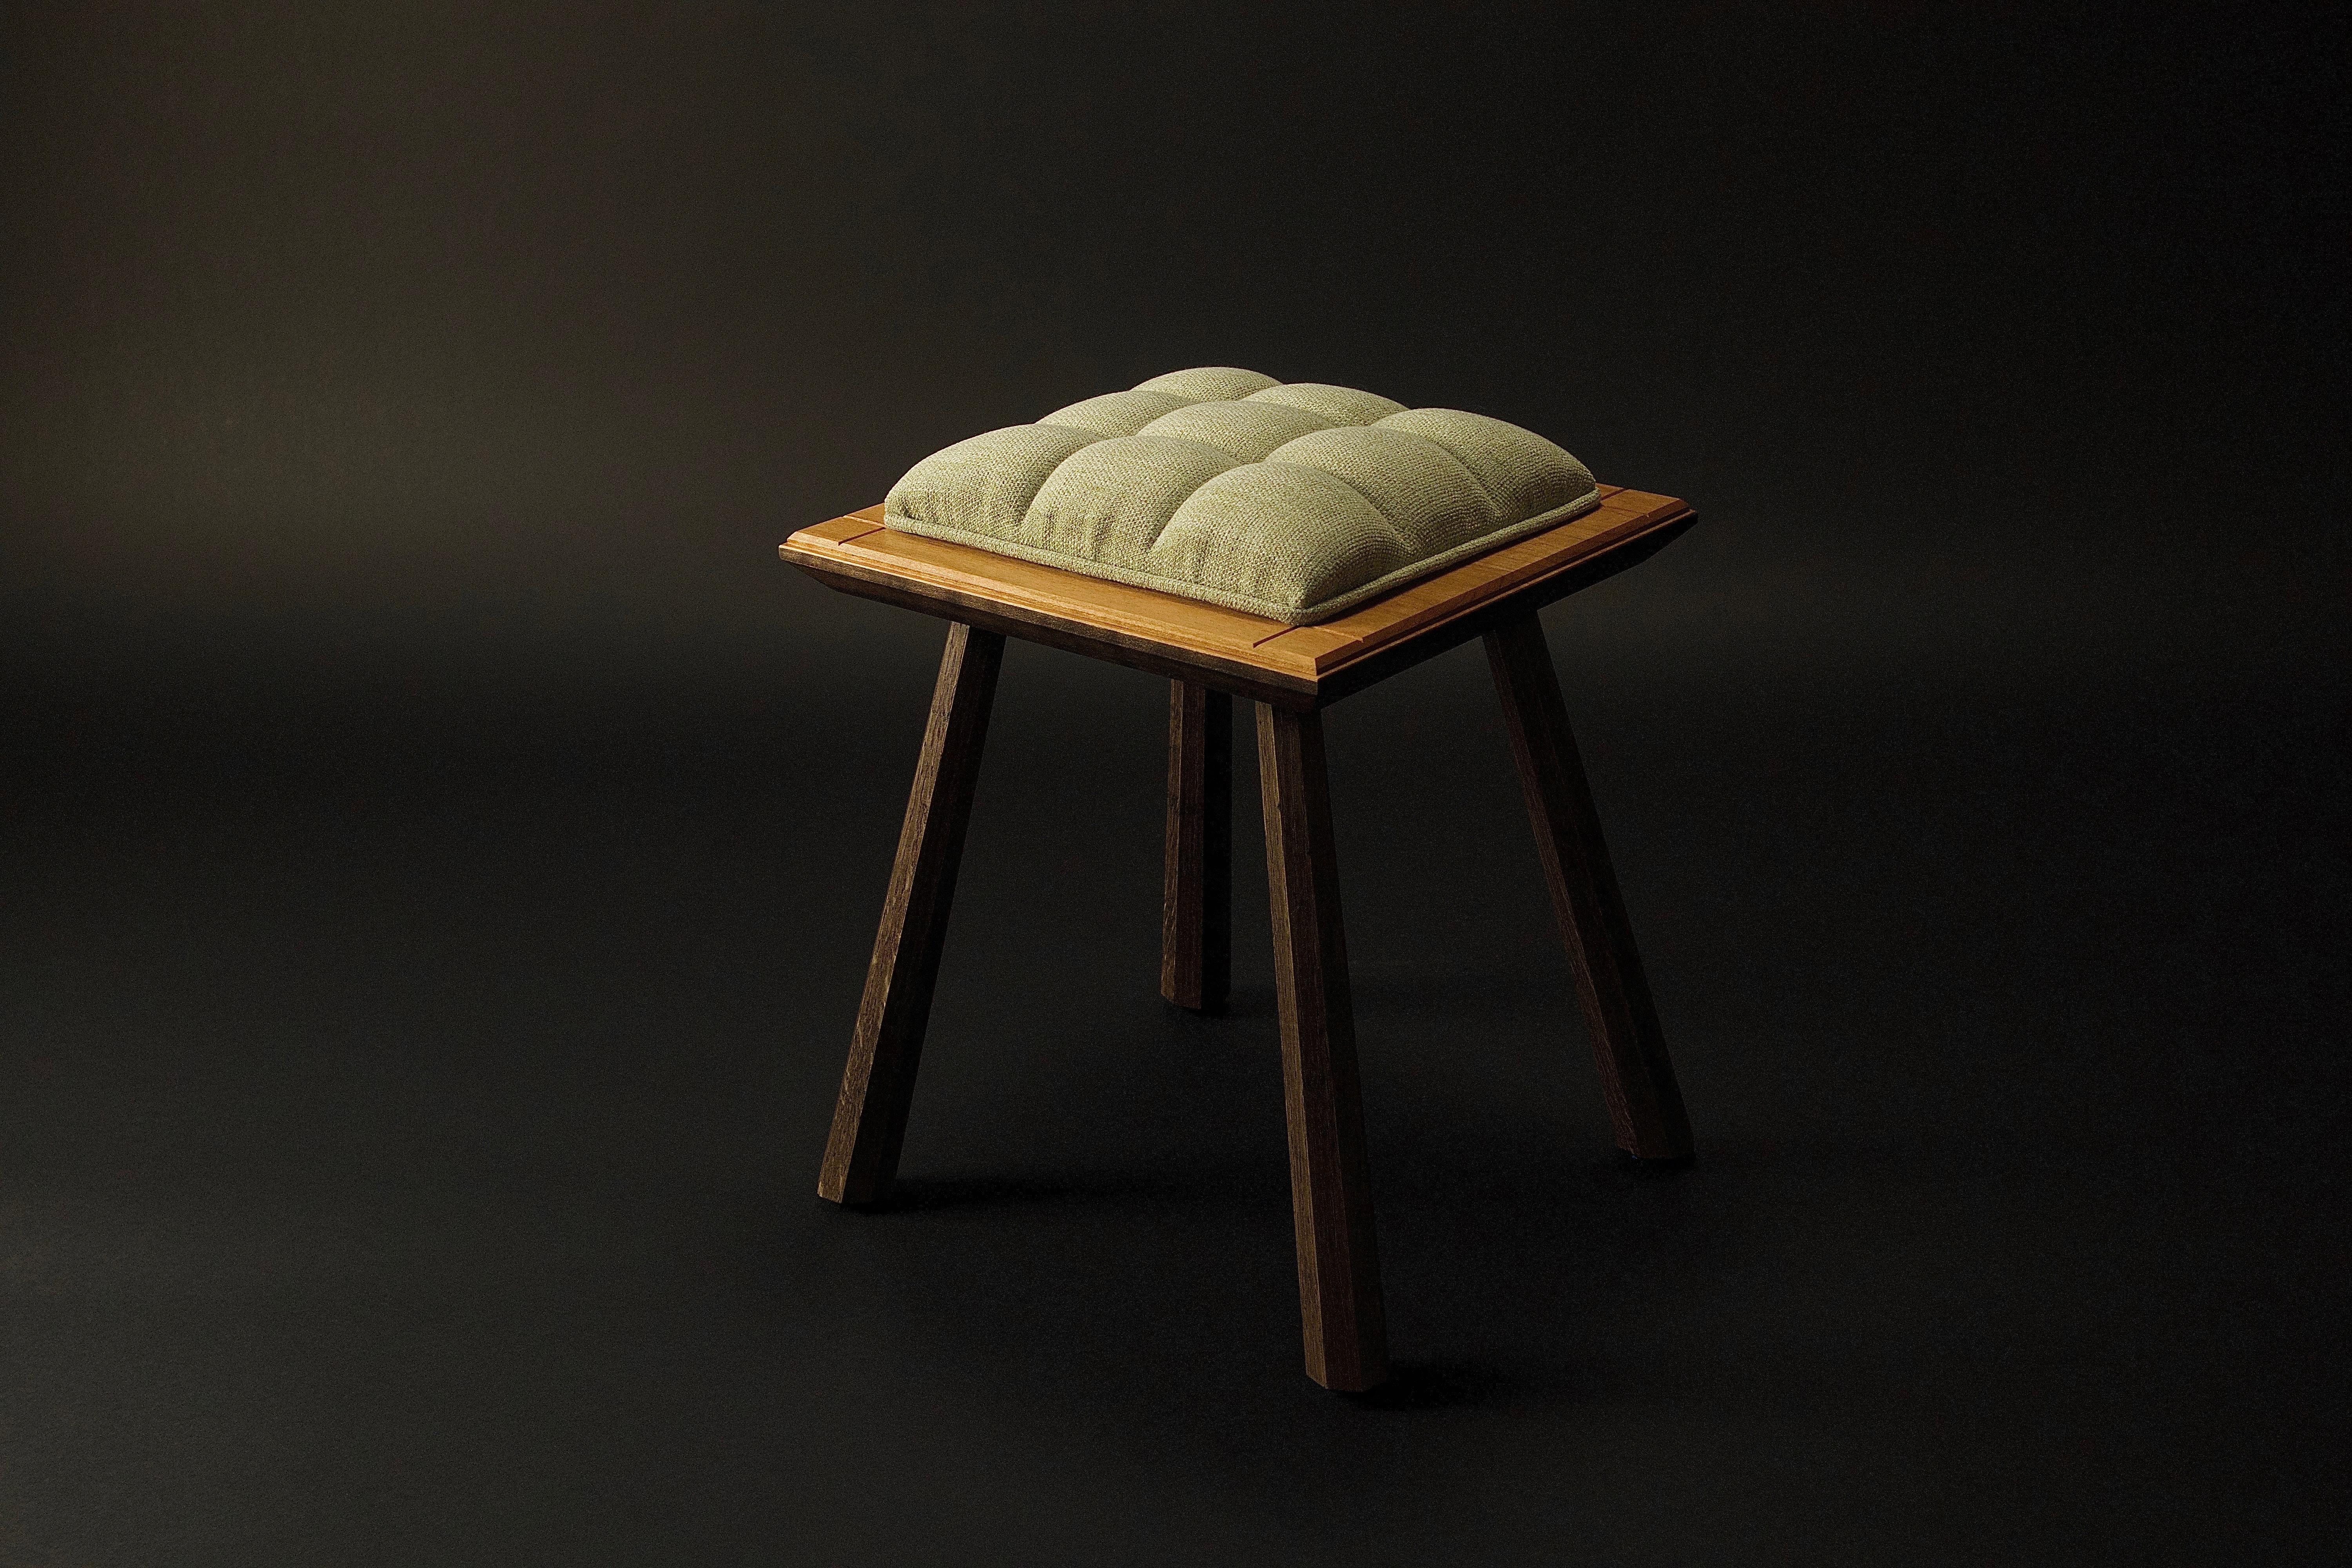 Die handwerklichen Designermöbel von Kenton Jeske woodworker werden in Bezug auf Handwerk, MATERIAL und Verarbeitung auf höchstem Niveau hergestellt. Das skulpturale und sinnliche Design in Verbindung mit einer zeitgemäßen Handwerkskunst schafft